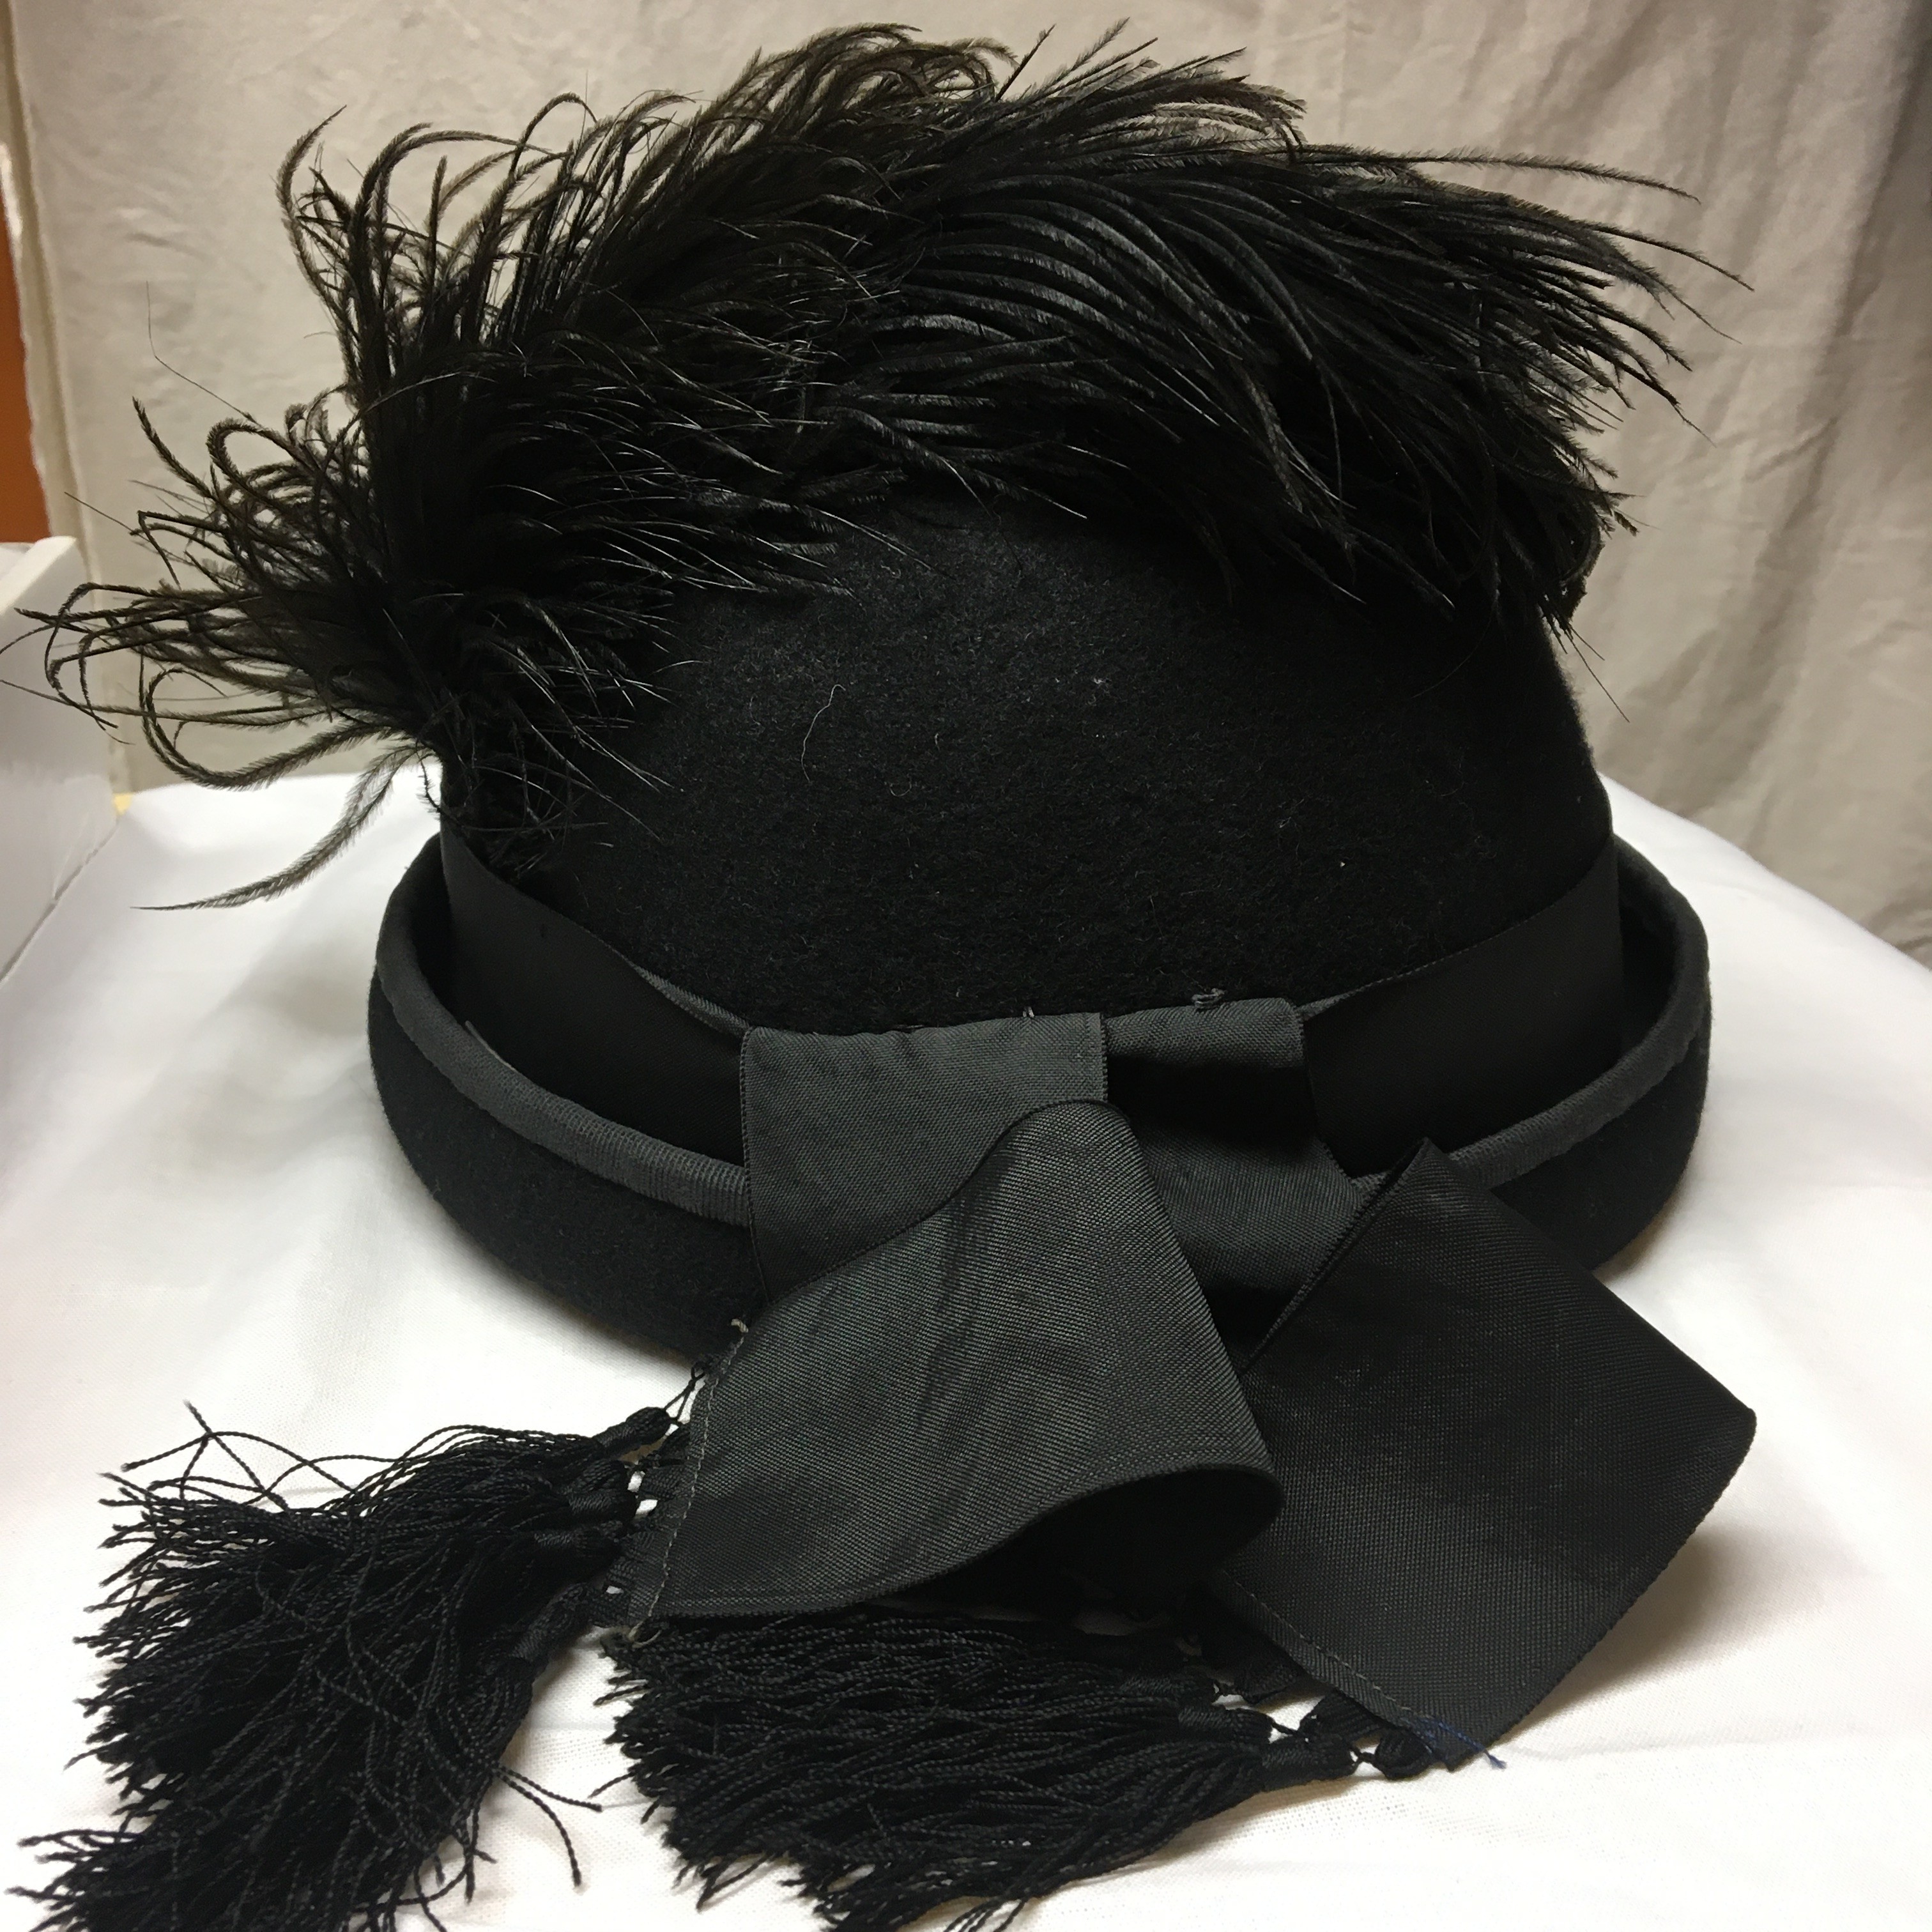 Postakocsis egyenruha1874-ből (rekonstrukció) 4. kalap (Postamúzeum CC BY-NC-SA)